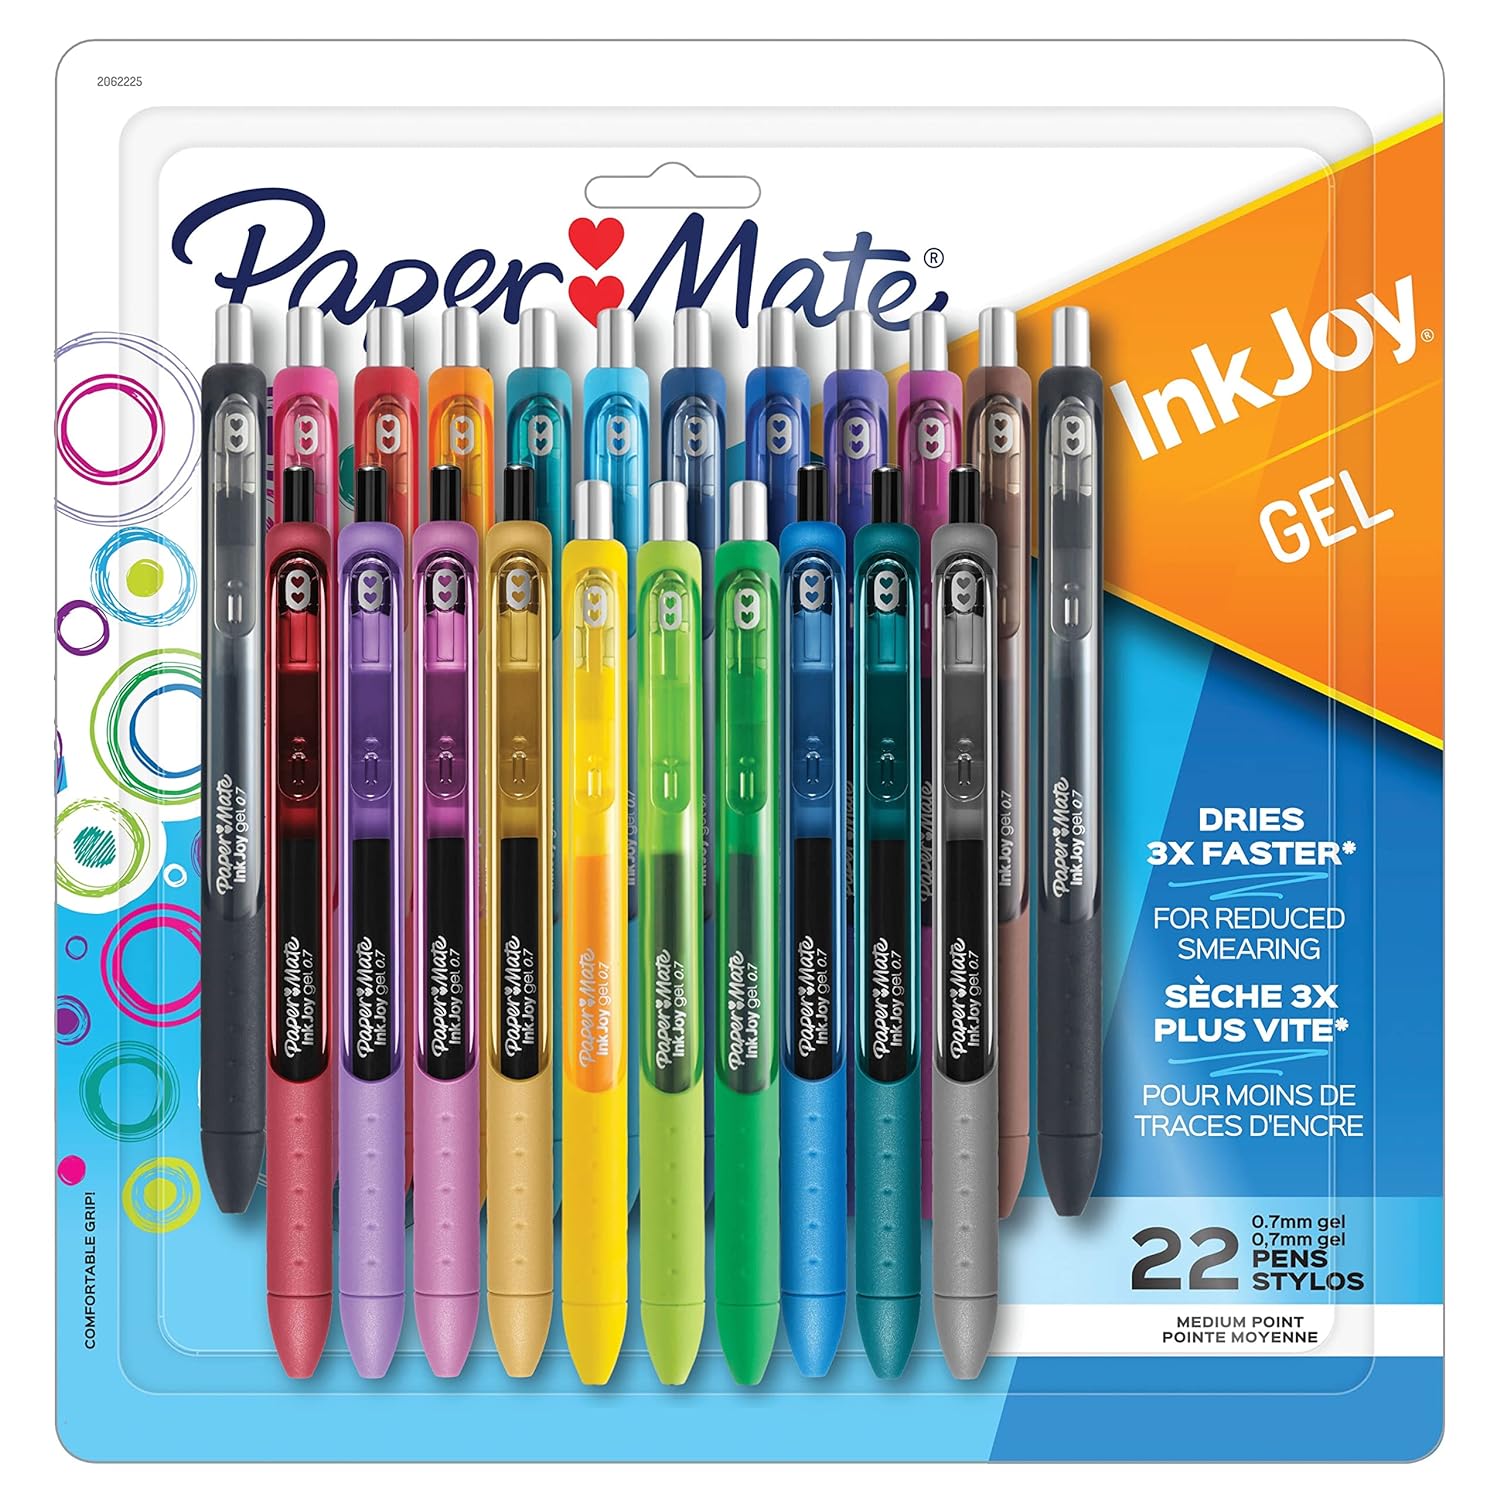 paper mate inkjoy gel 0.7 best gel pens planner pens with long lasting ink bullet journal pens rainbow colors